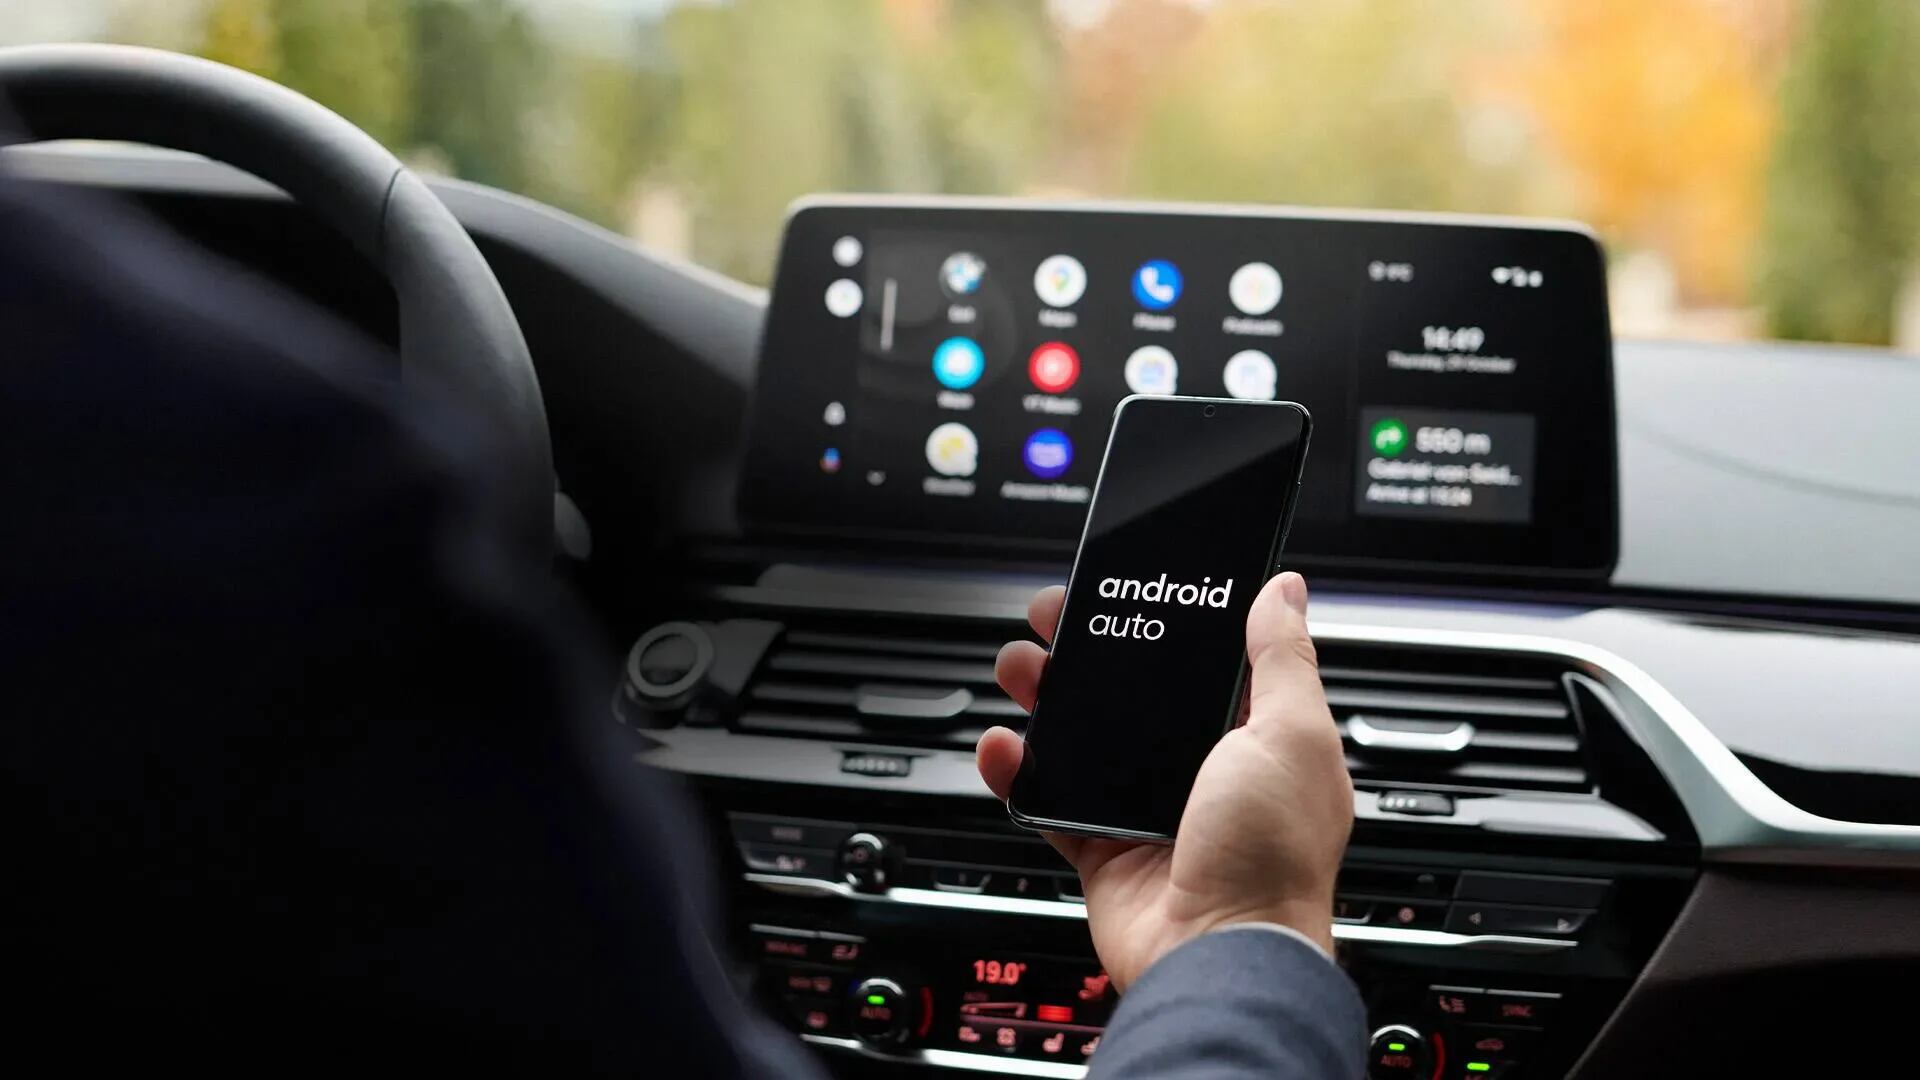 Android Auto : la nouvelle interface plus moderne arrive bientôt